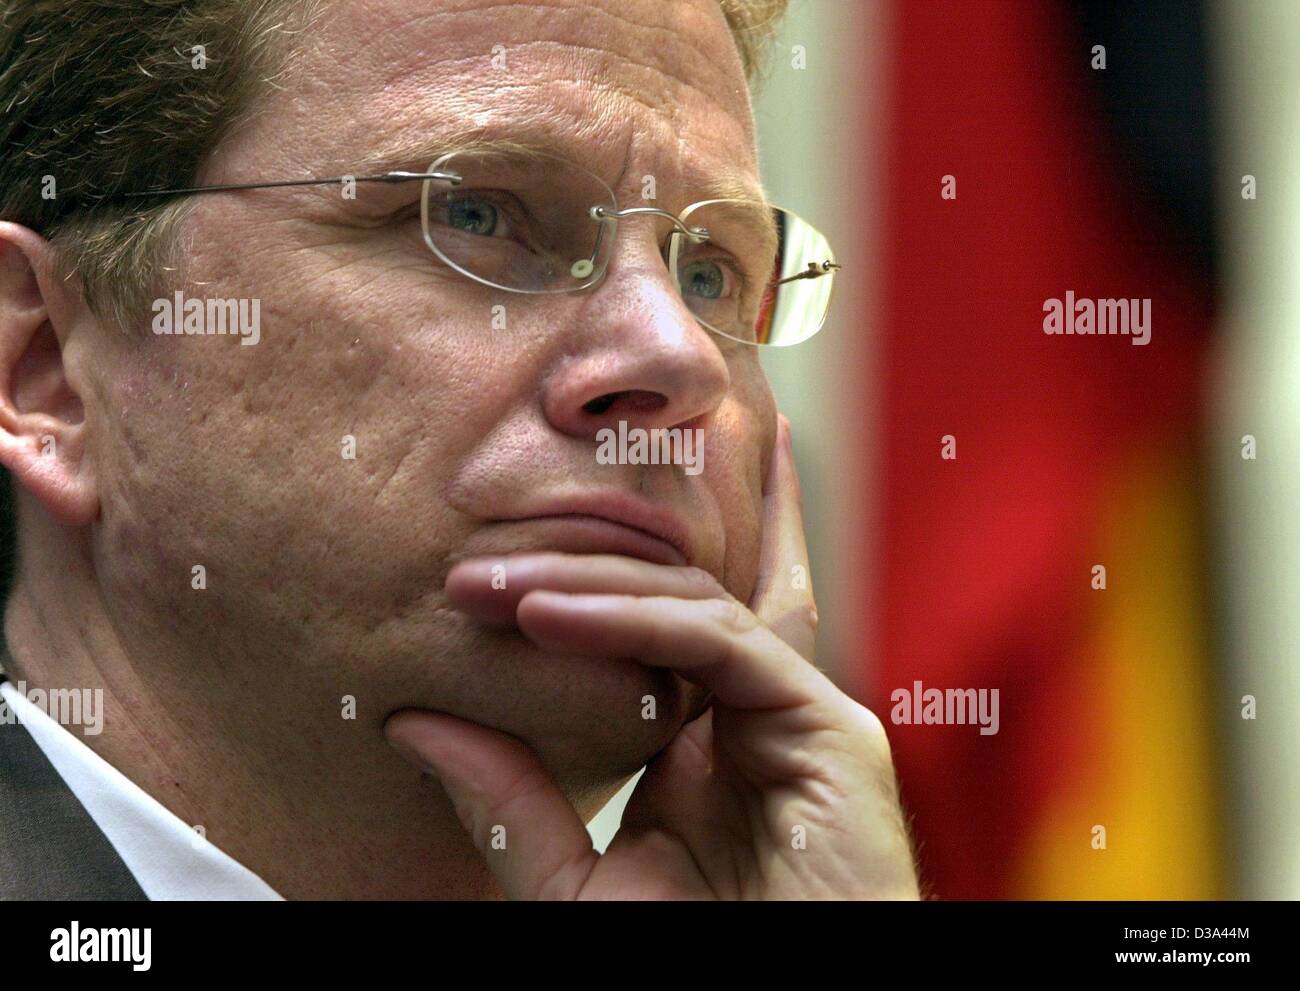 (Dpa) - Guido Westerwelle, deutscher Vorsitzender der Liberalen Partei (FDP), legt seinen Kopf in der Hand vor der deutschen Nationalflagge im Wahlkampf seiner Partei im ehemaligen Bundestag in Bonn, Deutschland, 7. Juli 2002. Stockfoto